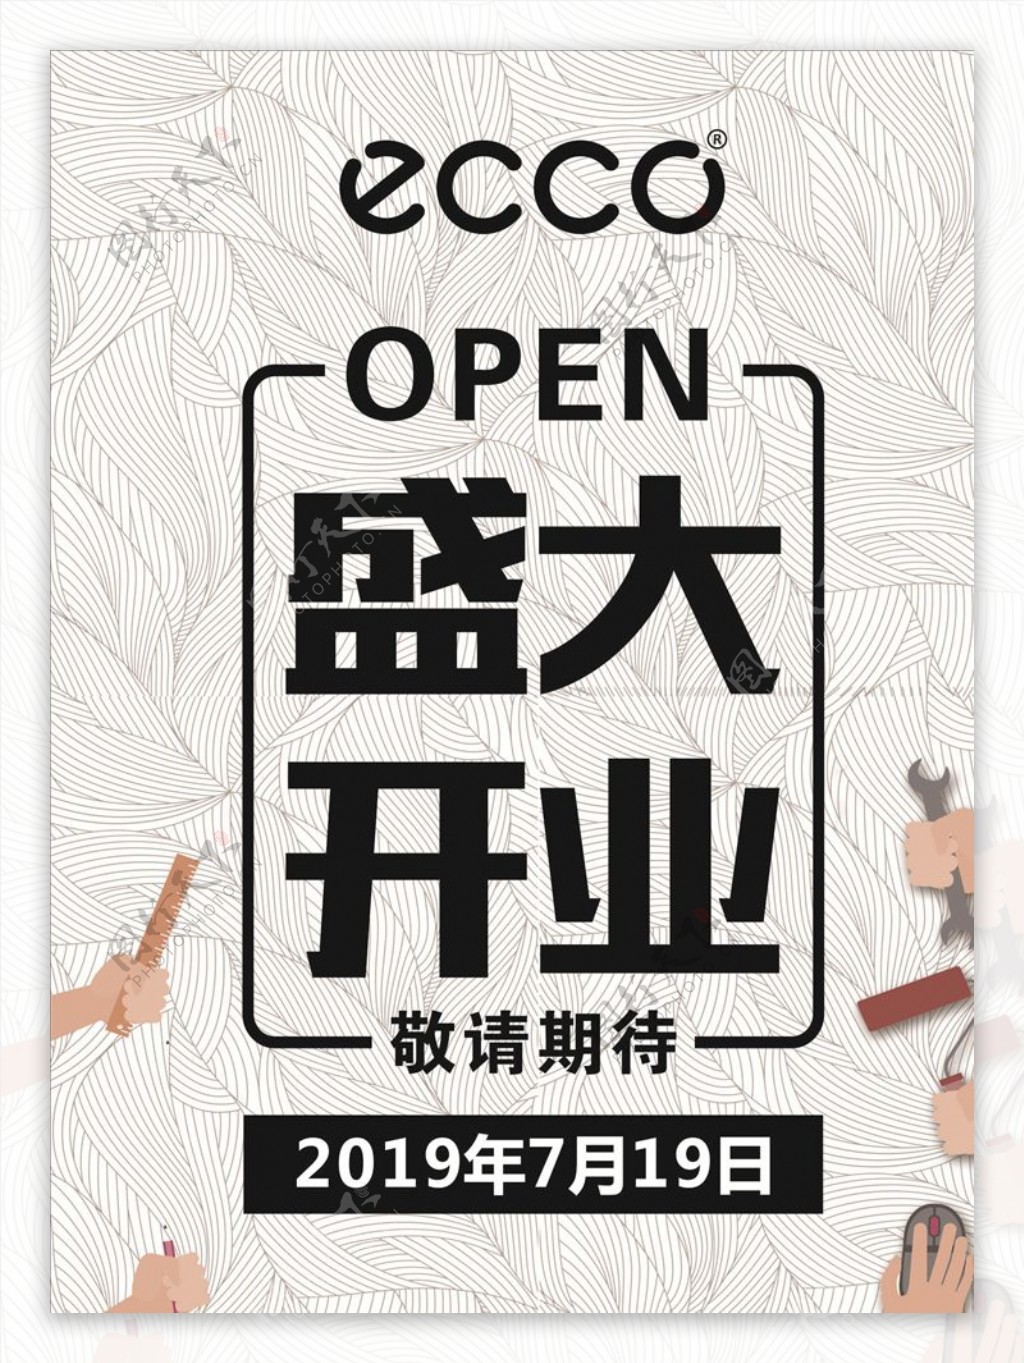 ECCO盛大开业